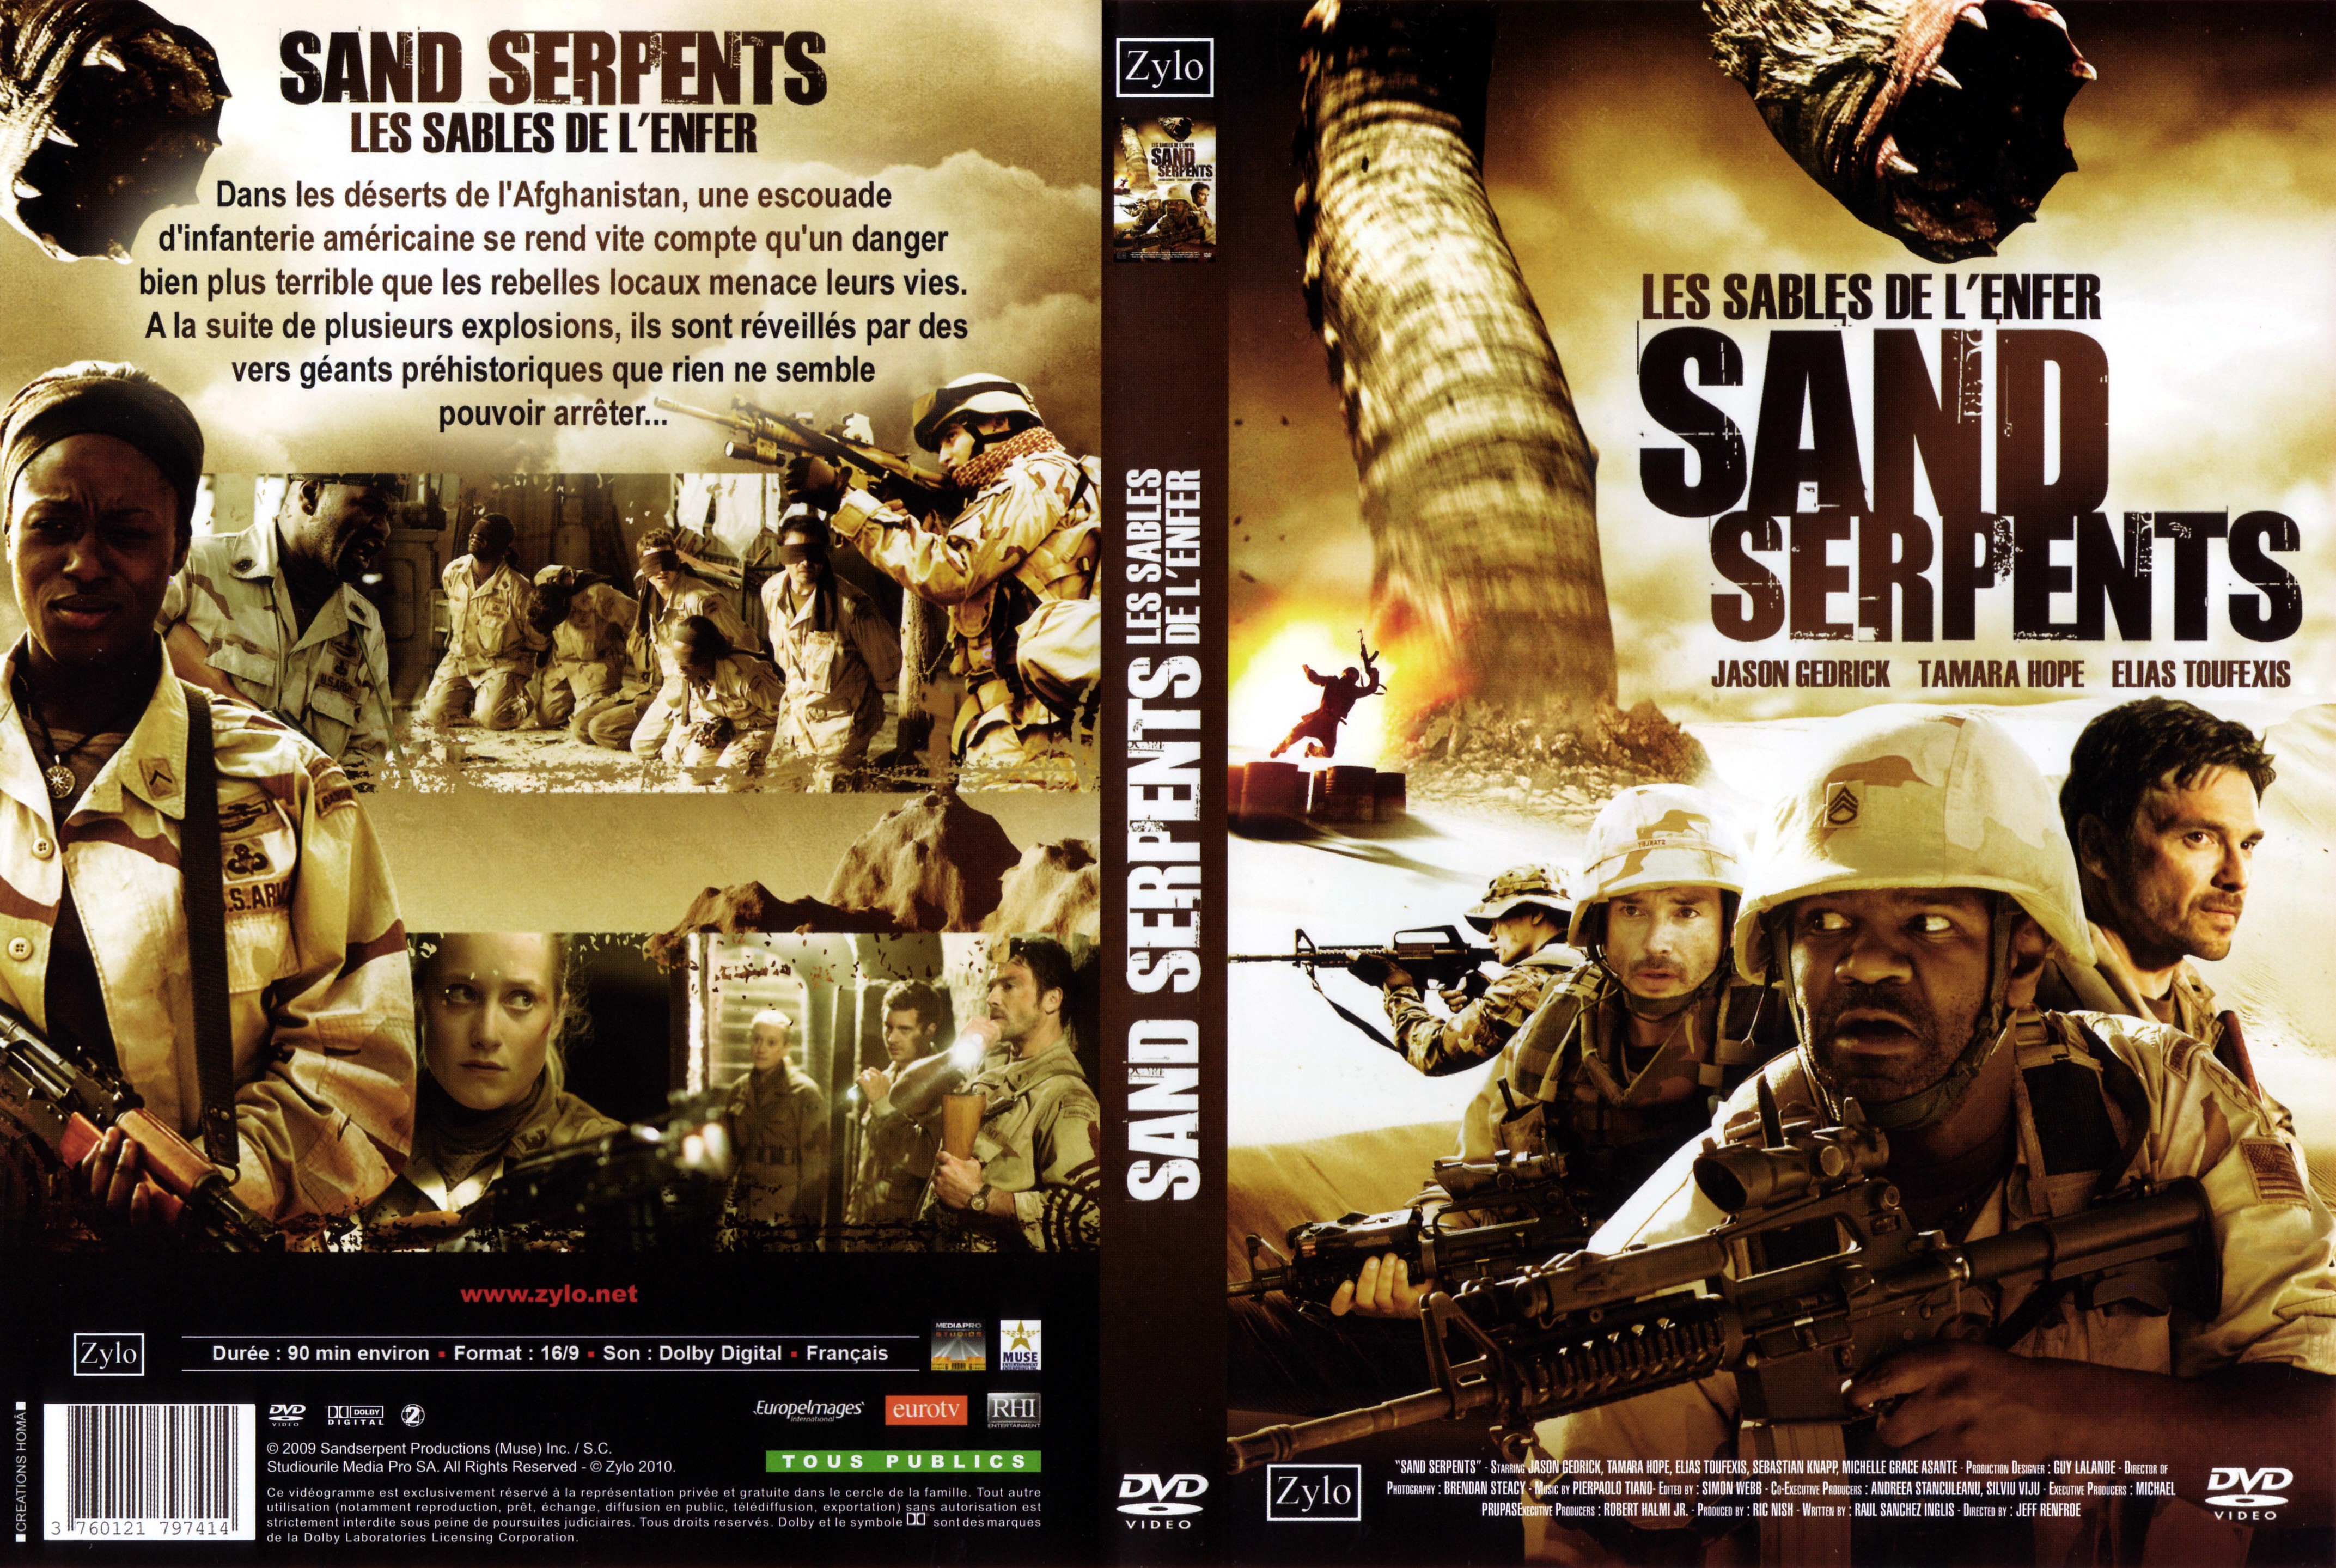 Jaquette DVD Sand serpents - les sables de l